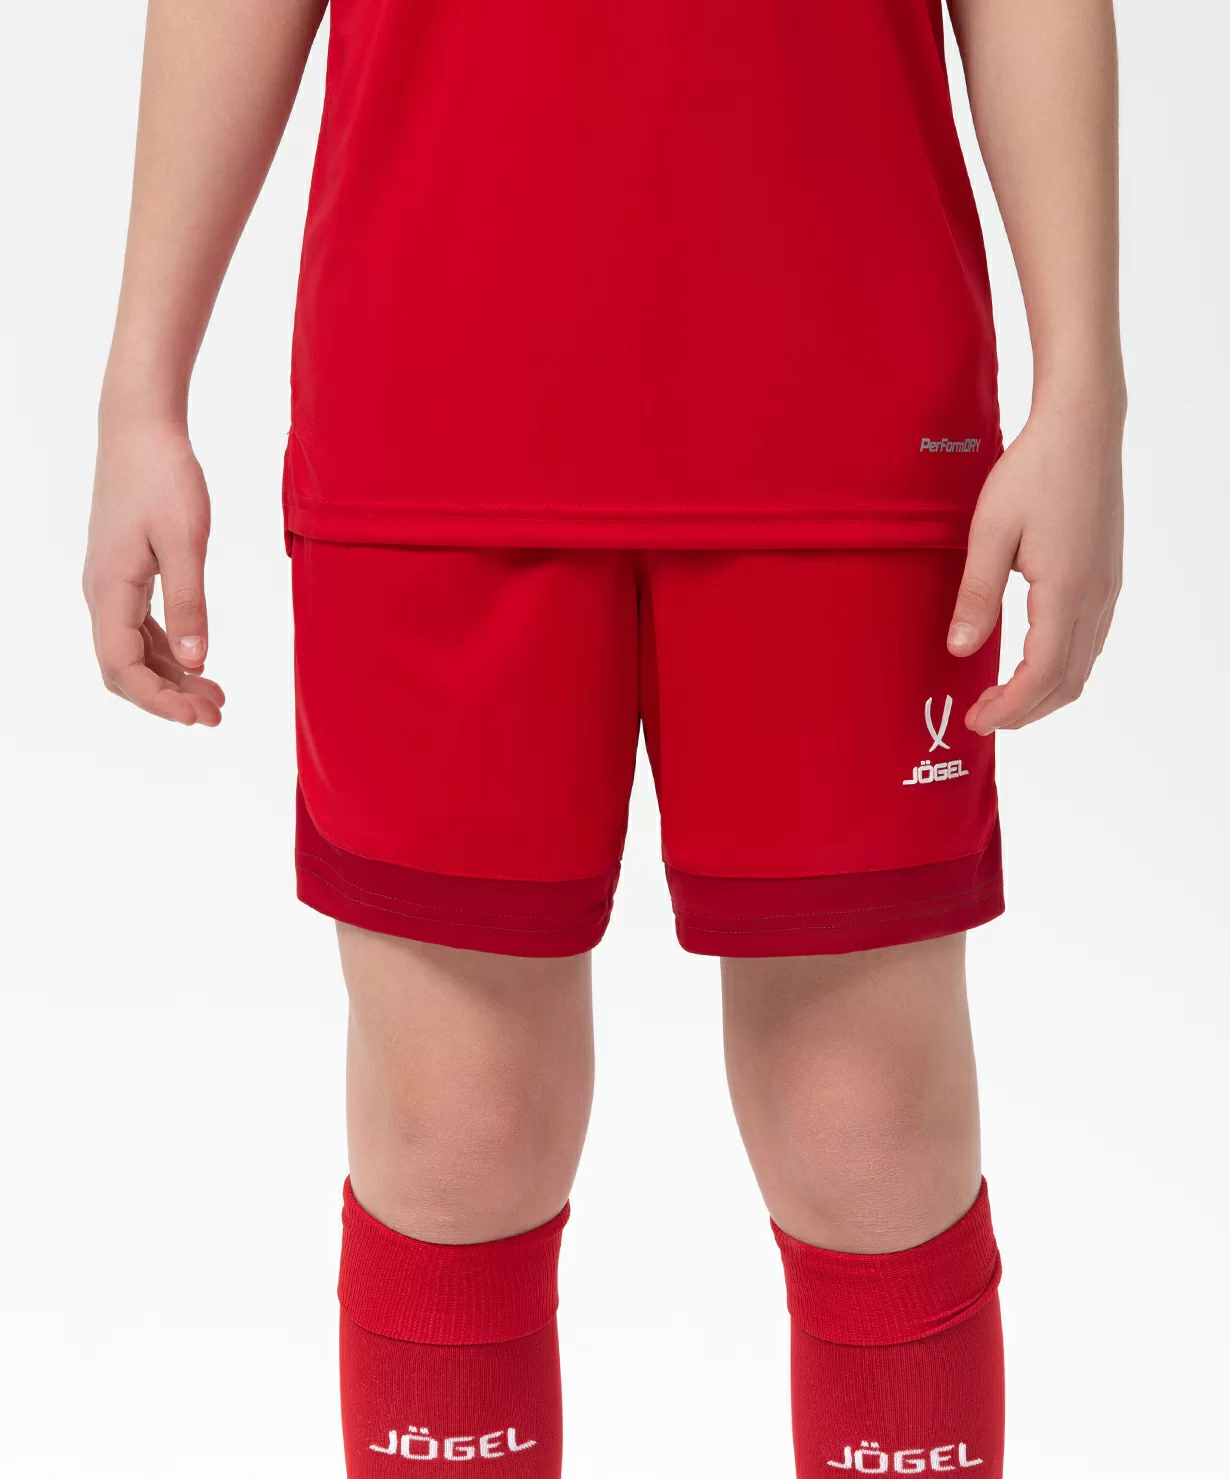 Реальное фото Шорты игровые DIVISION PerFormDRY Union Shorts, красный/ темно-красный/белый, детский Jögel от магазина Спортев